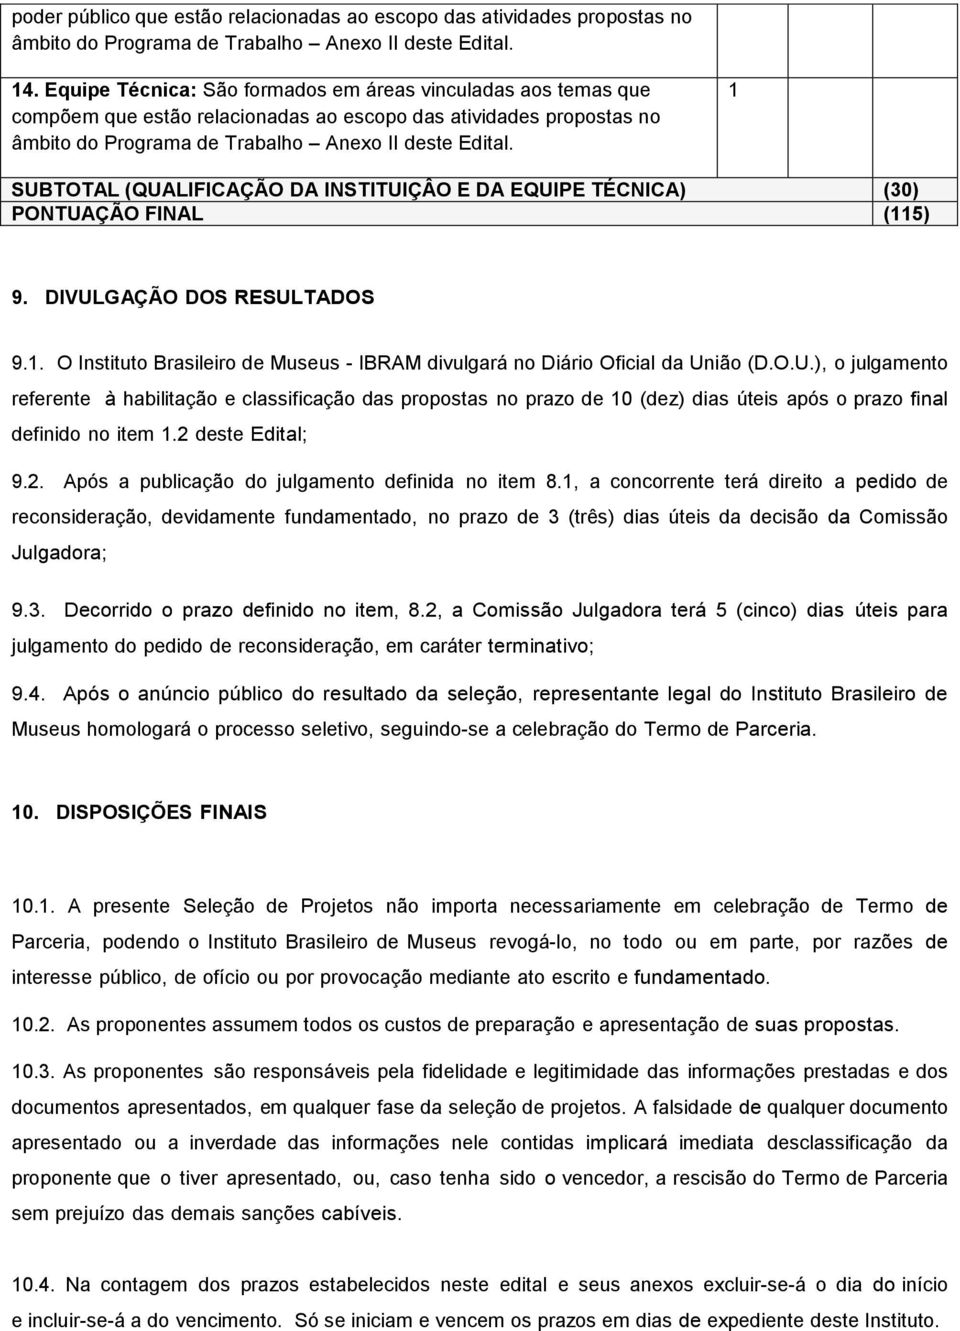 1 SUBTOTAL (QUALIFICAÇÃO DA INSTITUIÇÂO E DA EQUIPE TÉCNICA) (30) PONTUAÇÃO FINAL (115) 9. DIVULGAÇÃO DOS RESULTADOS 9.1. O Instituto Brasileiro de Museus - IBRAM divulgará no Diário Oficial da União (D.